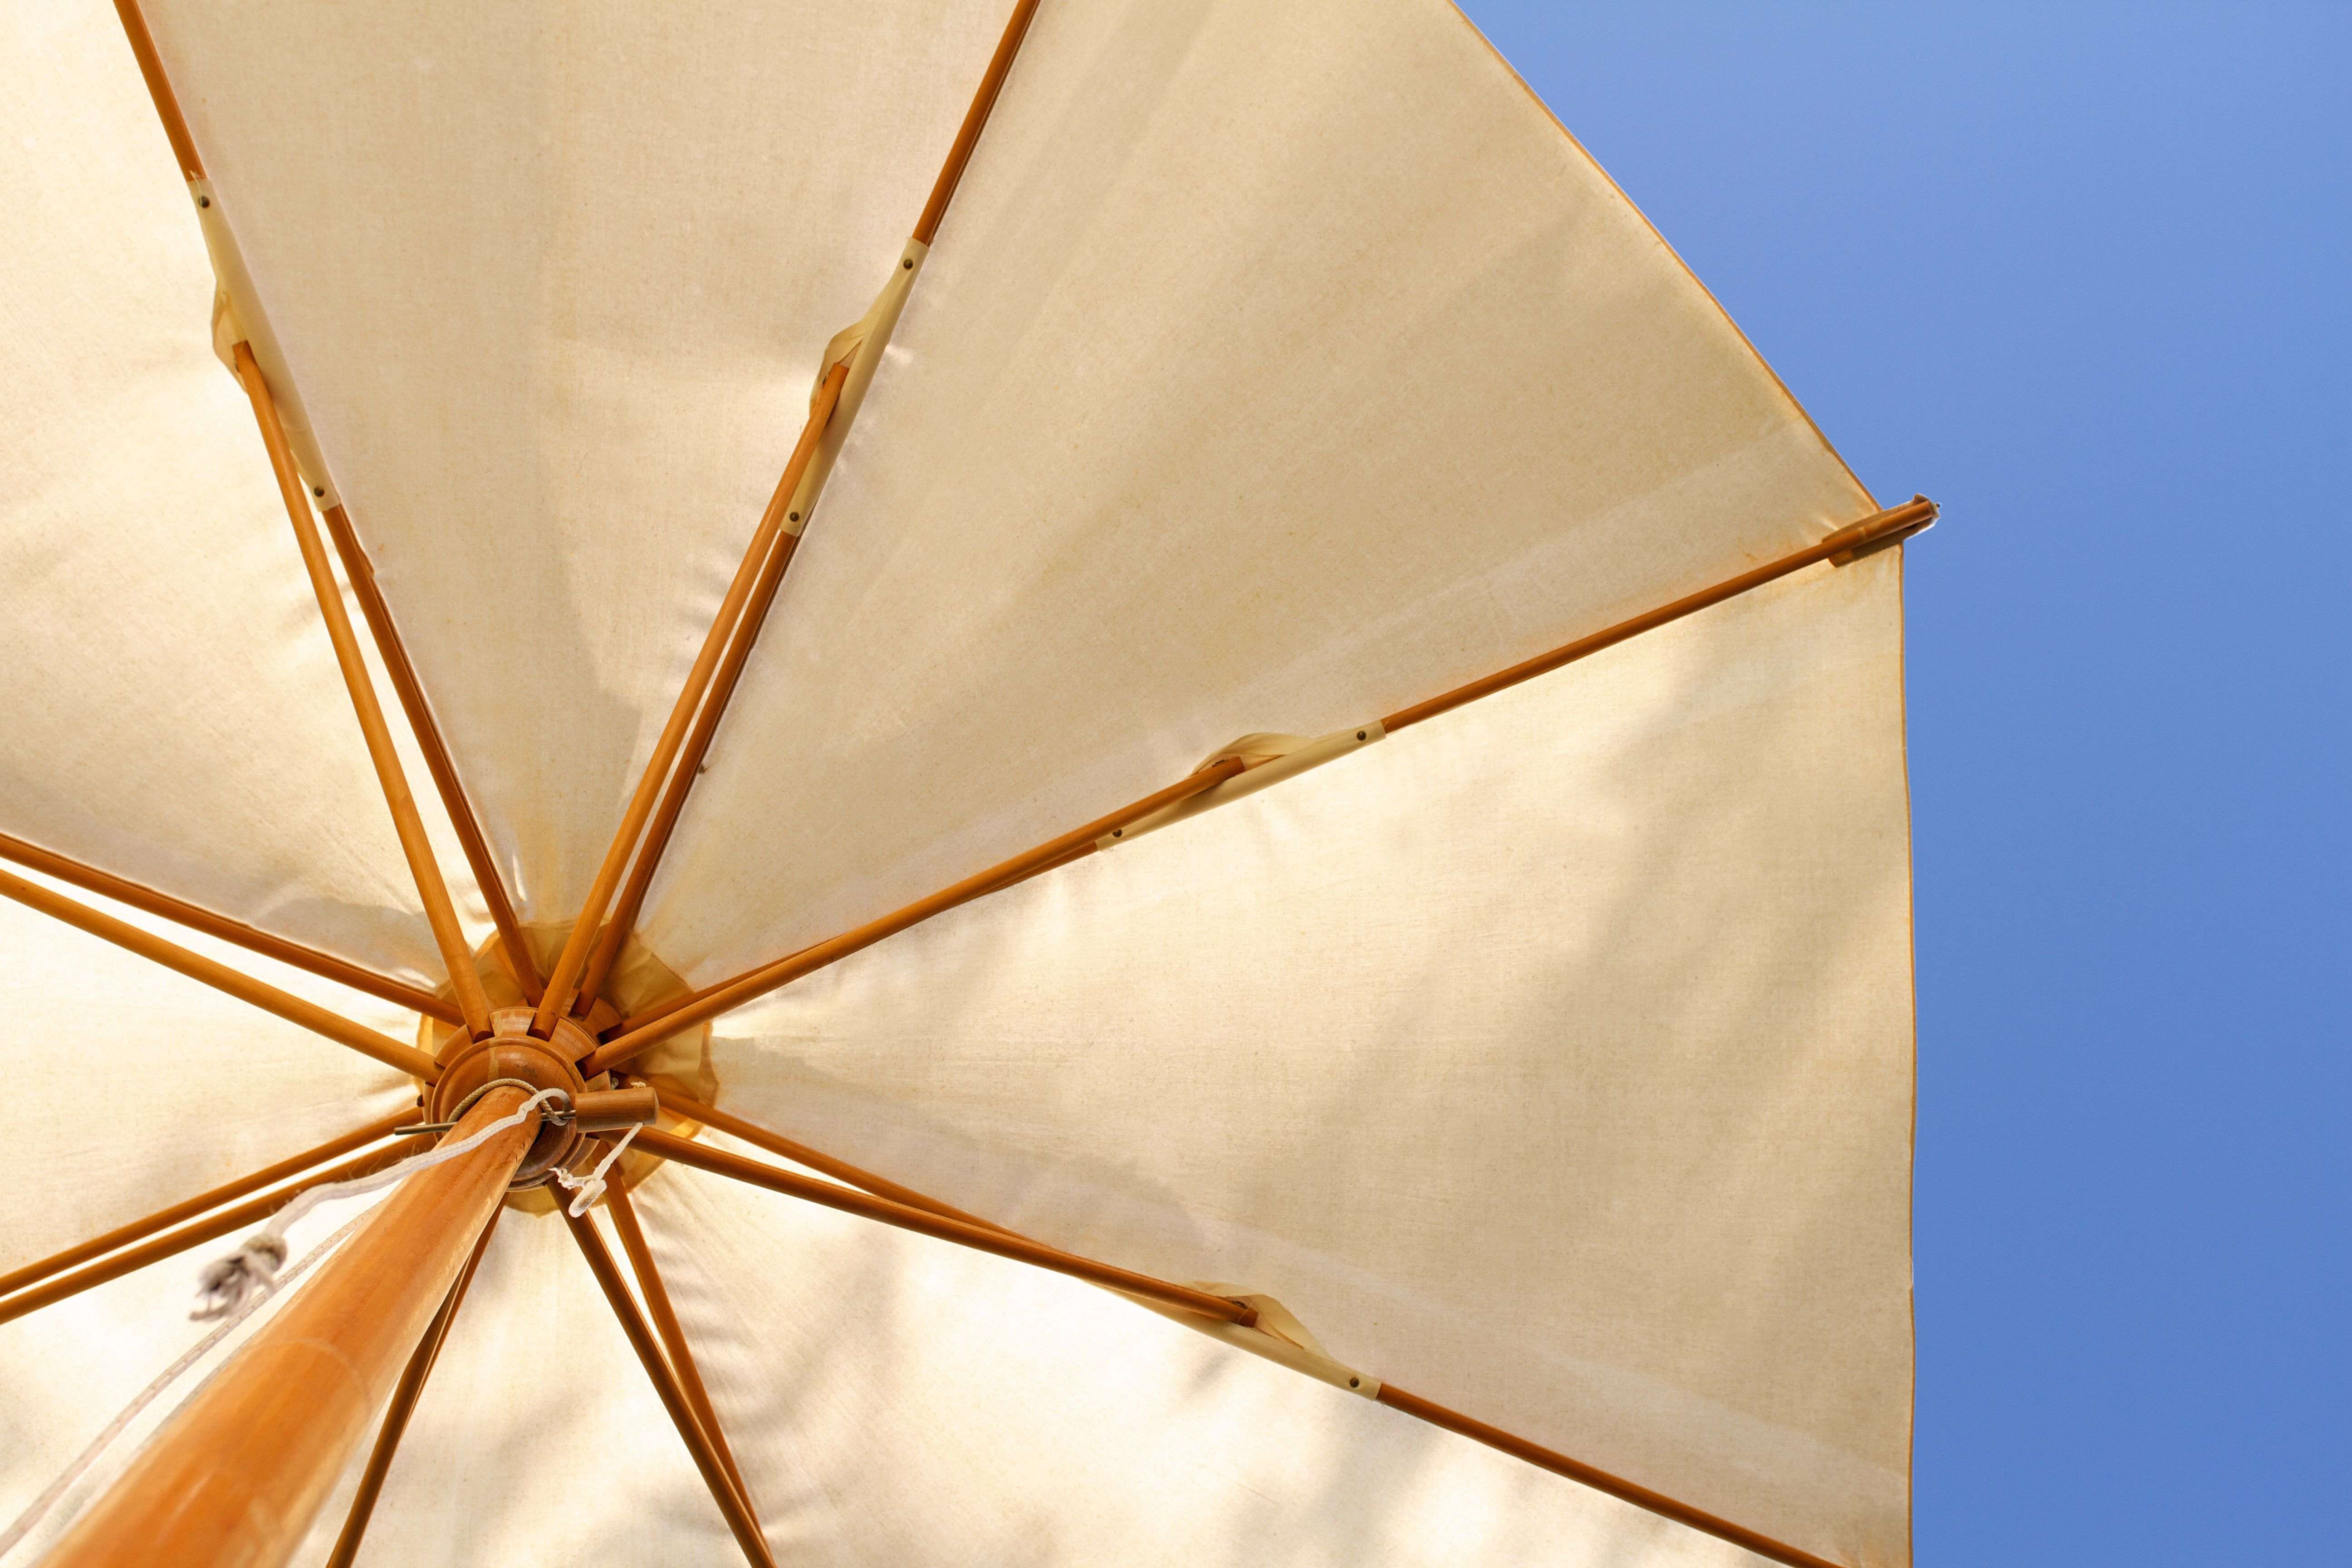 Parasol ou tonnelle : que choisir pour avoir de l’ombre aux beaux jours